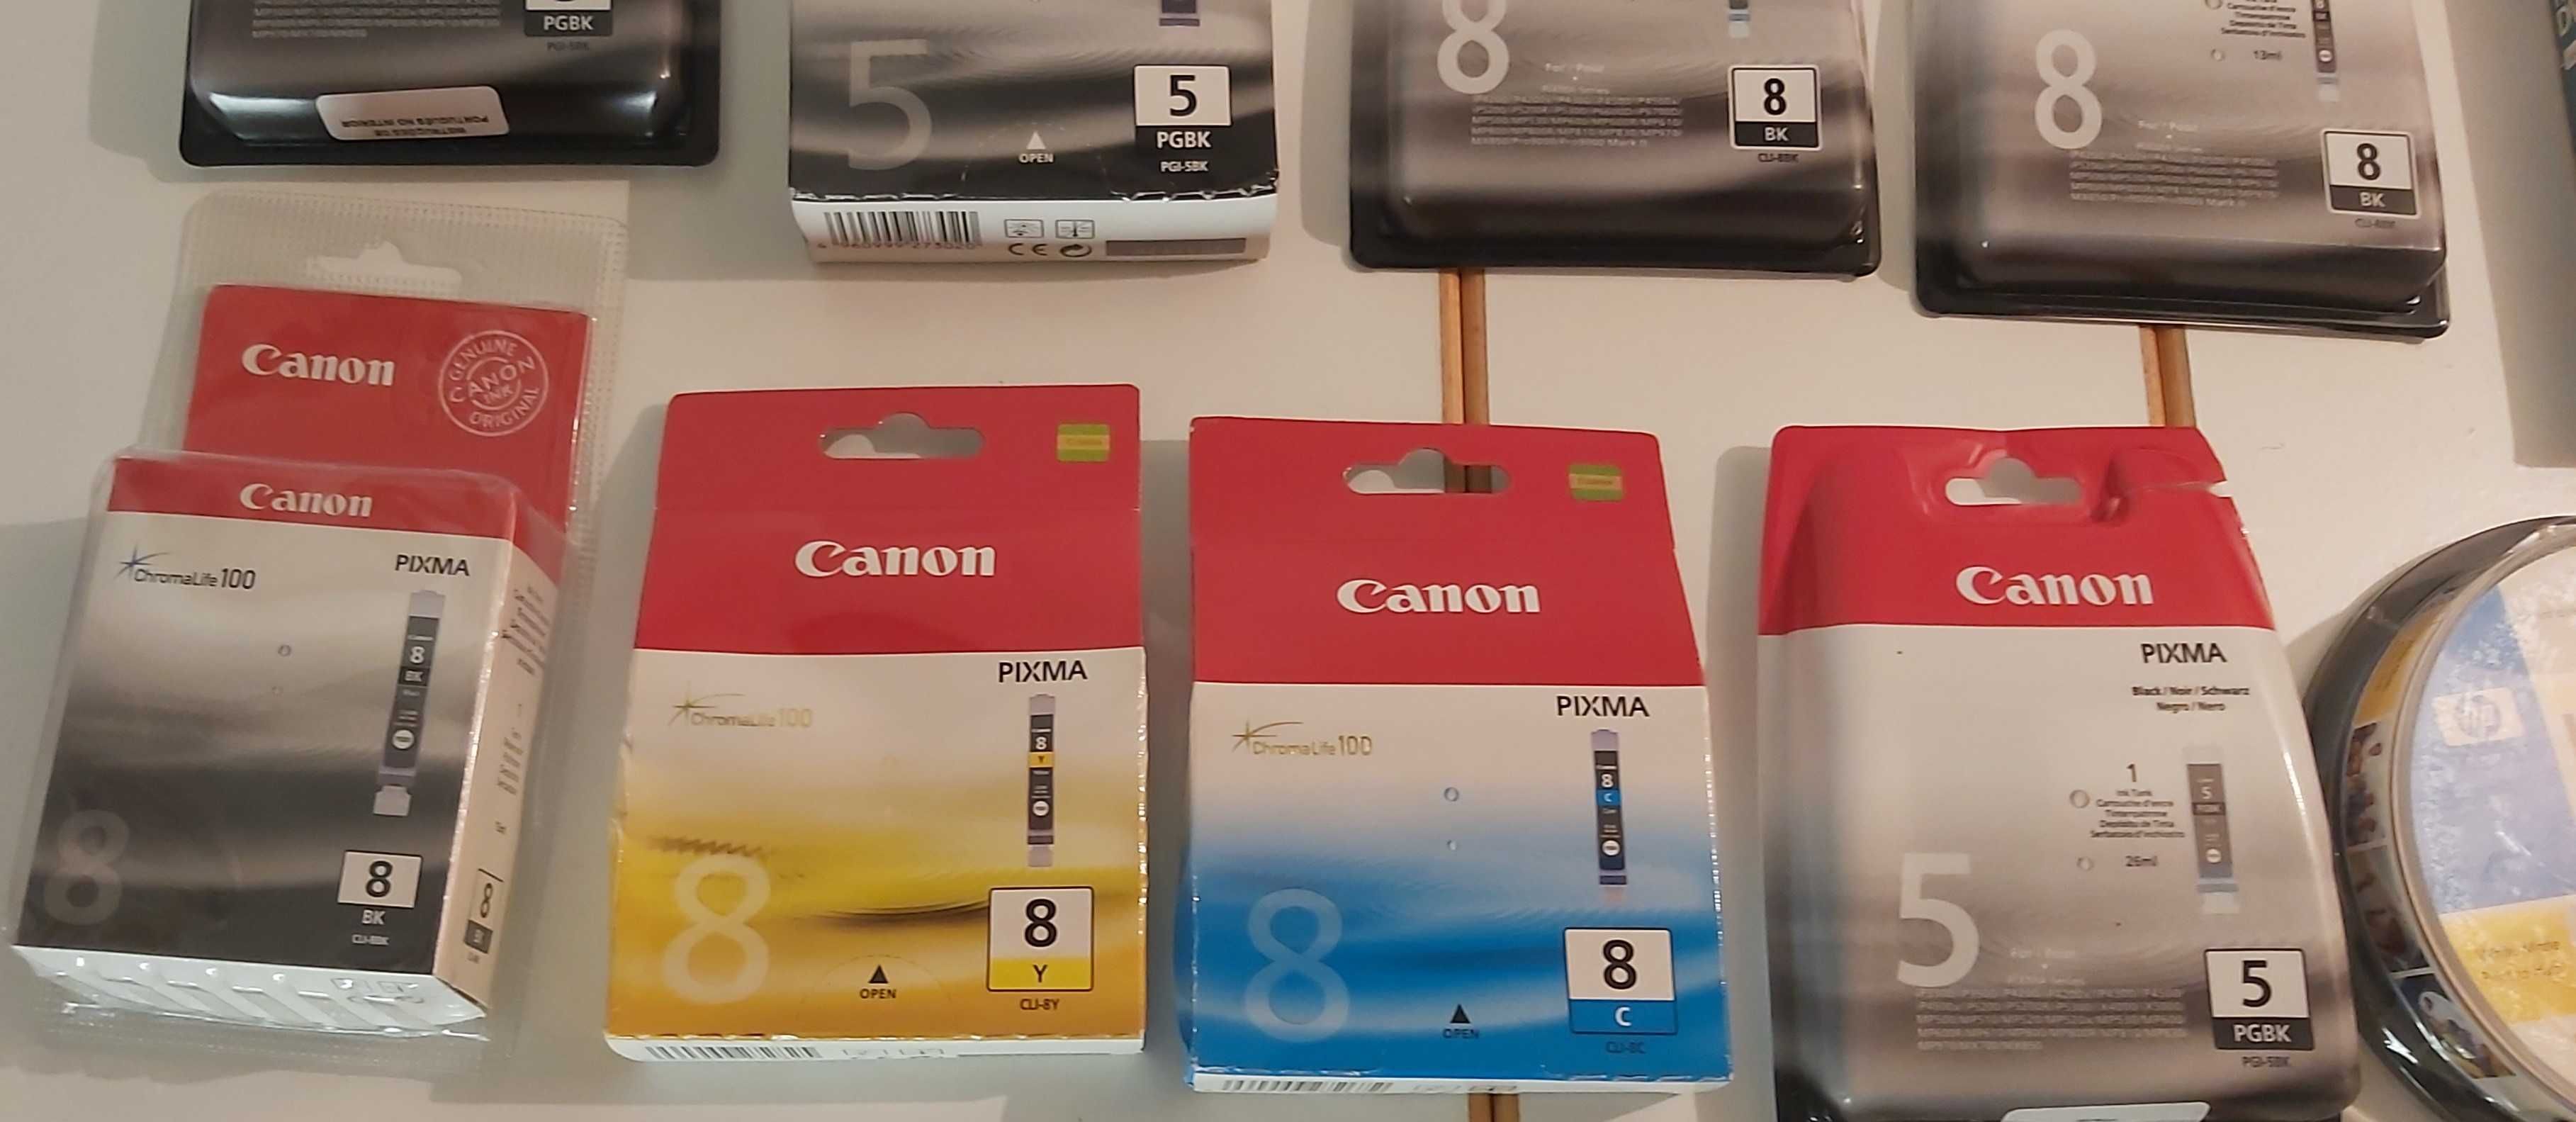 Tinteiros para impressora Canon e DVD  e capas dados venda individual